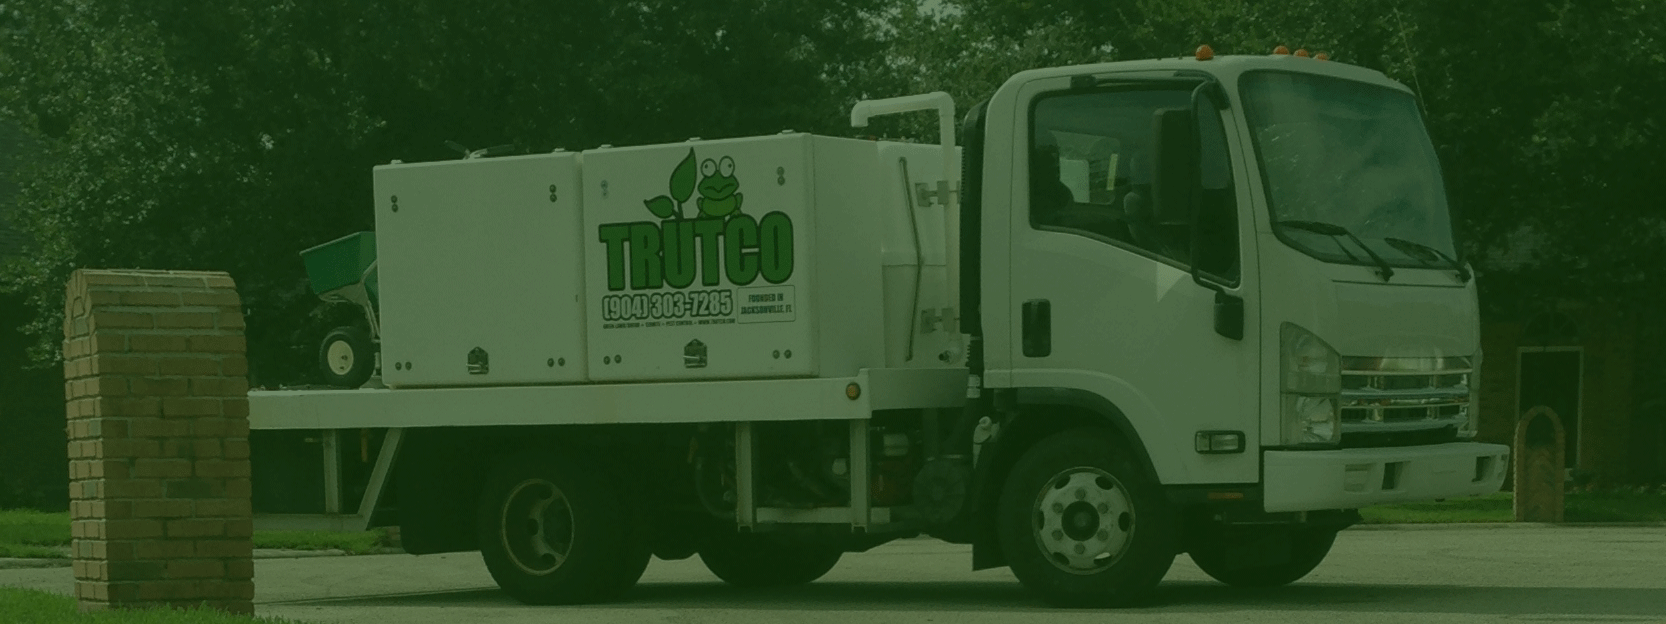 Trutco | Lawn Service Jacksonville FL | Lawn Pest Control |